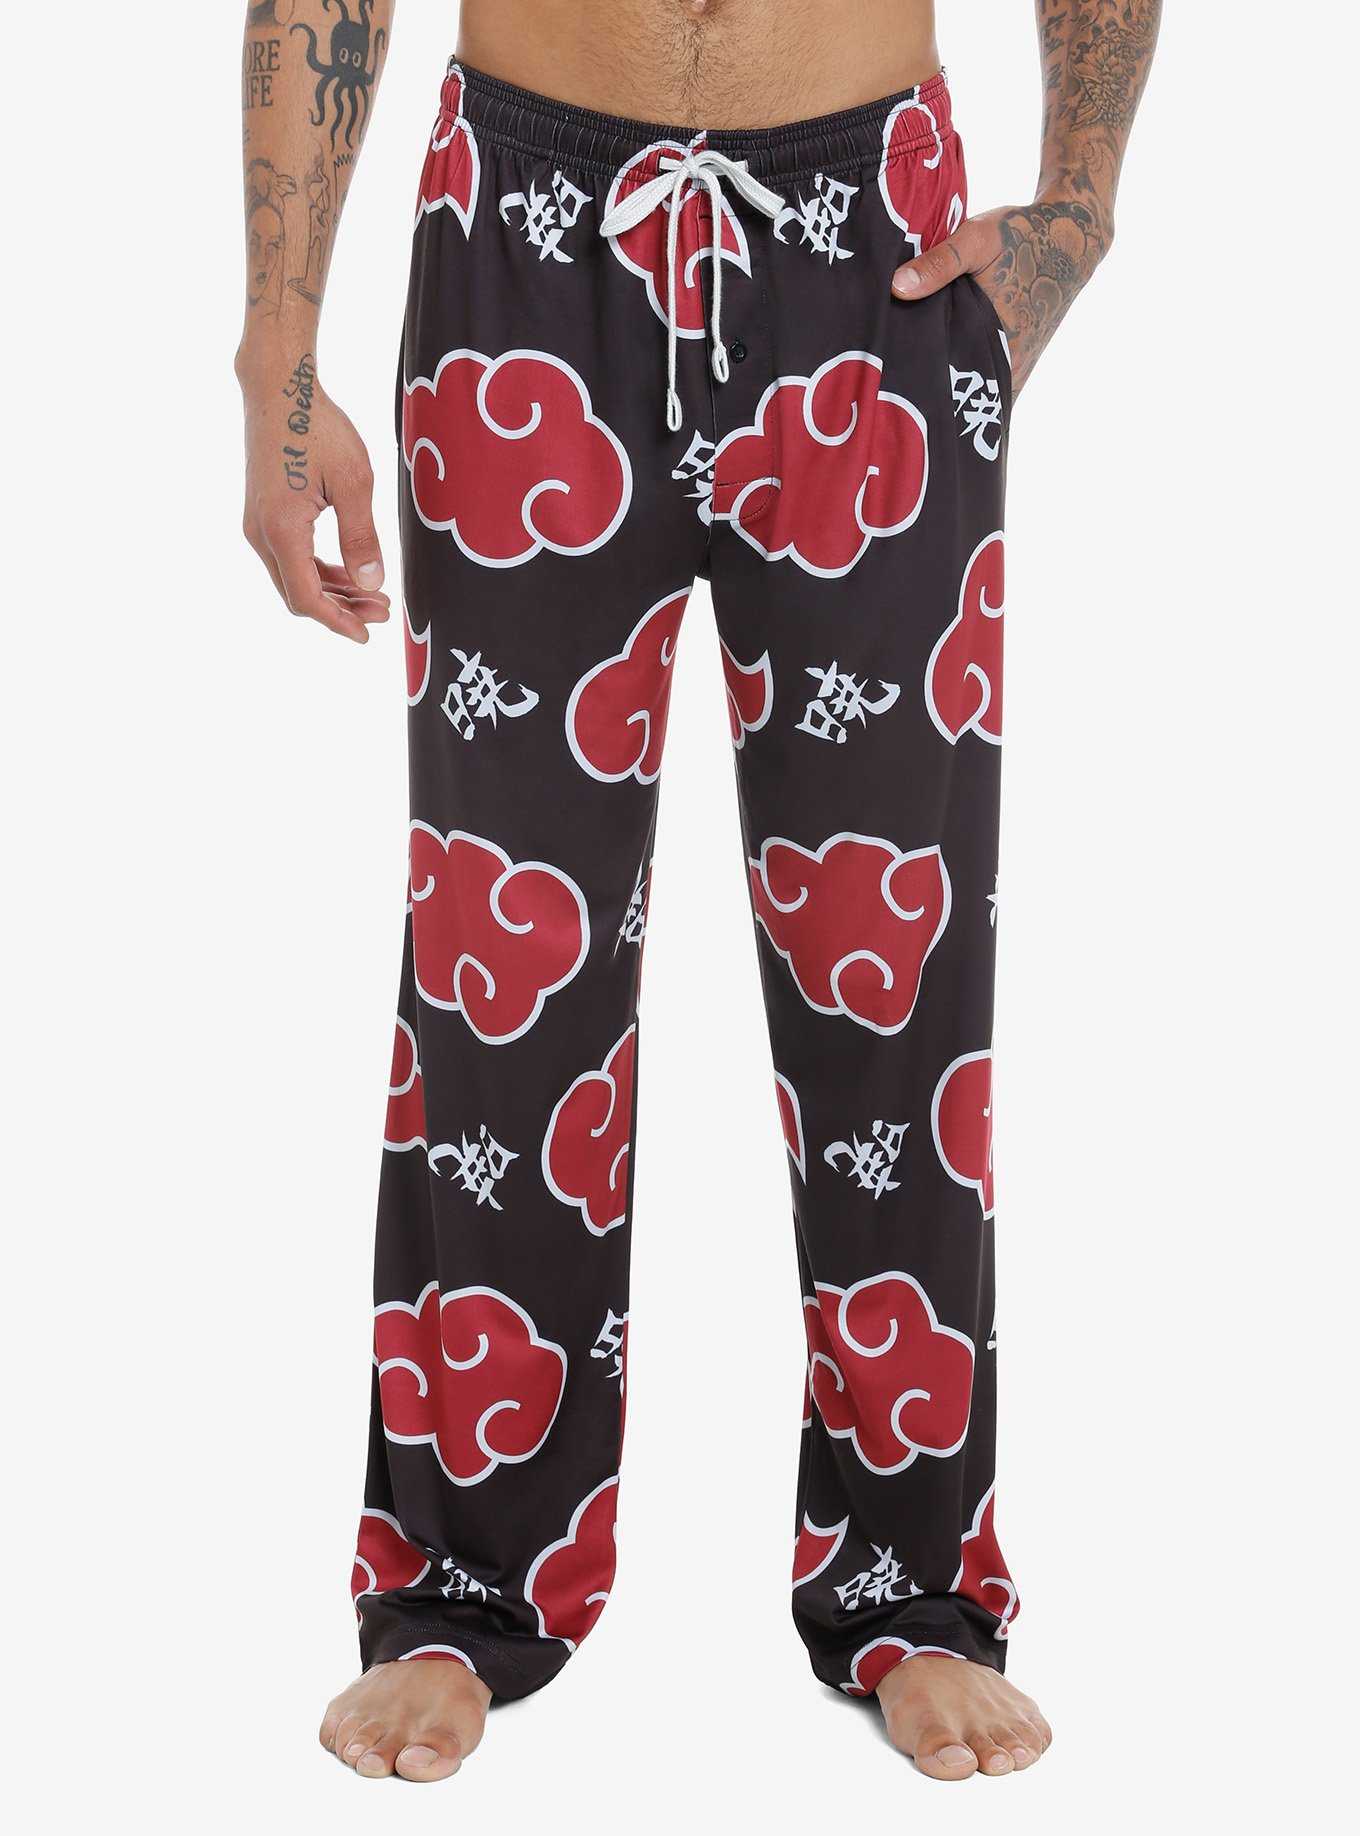 Guys Pajamas and Pajama Pants